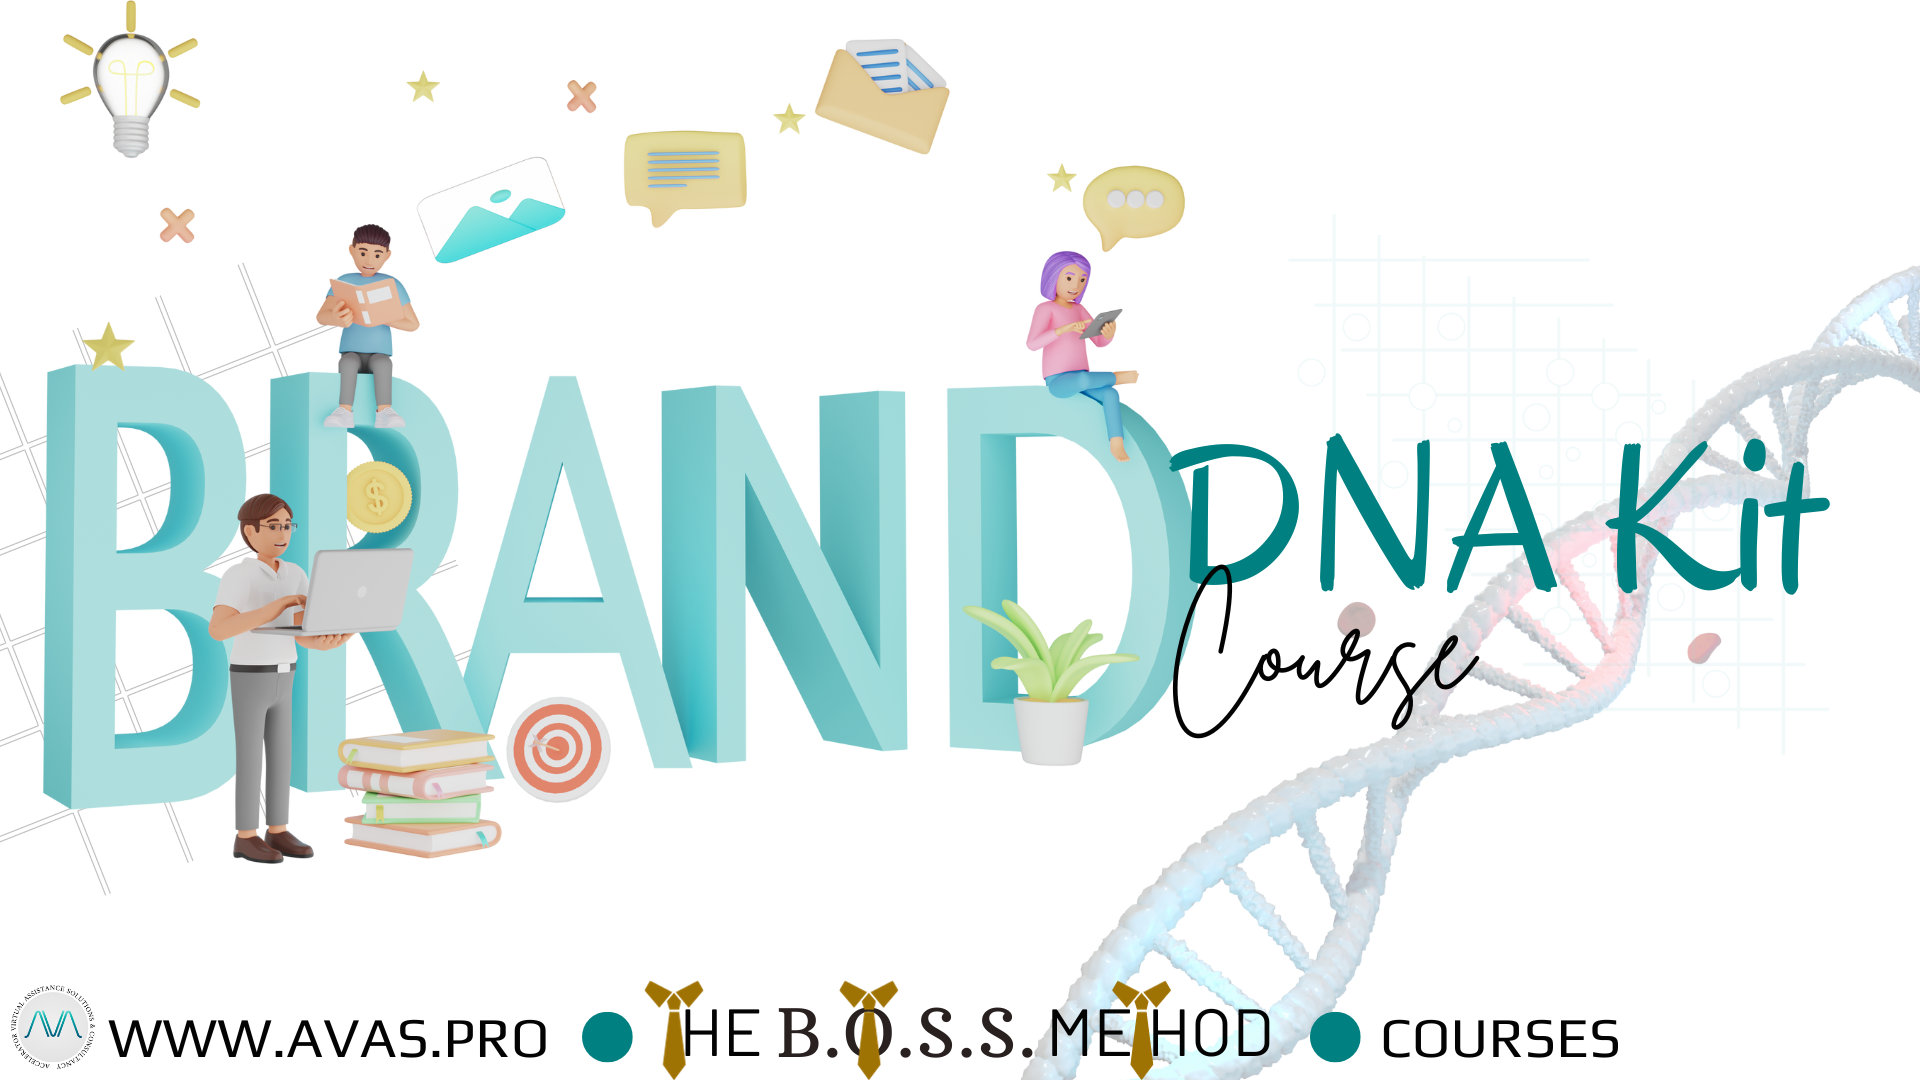 BOSS Method - Brand DNA Kit